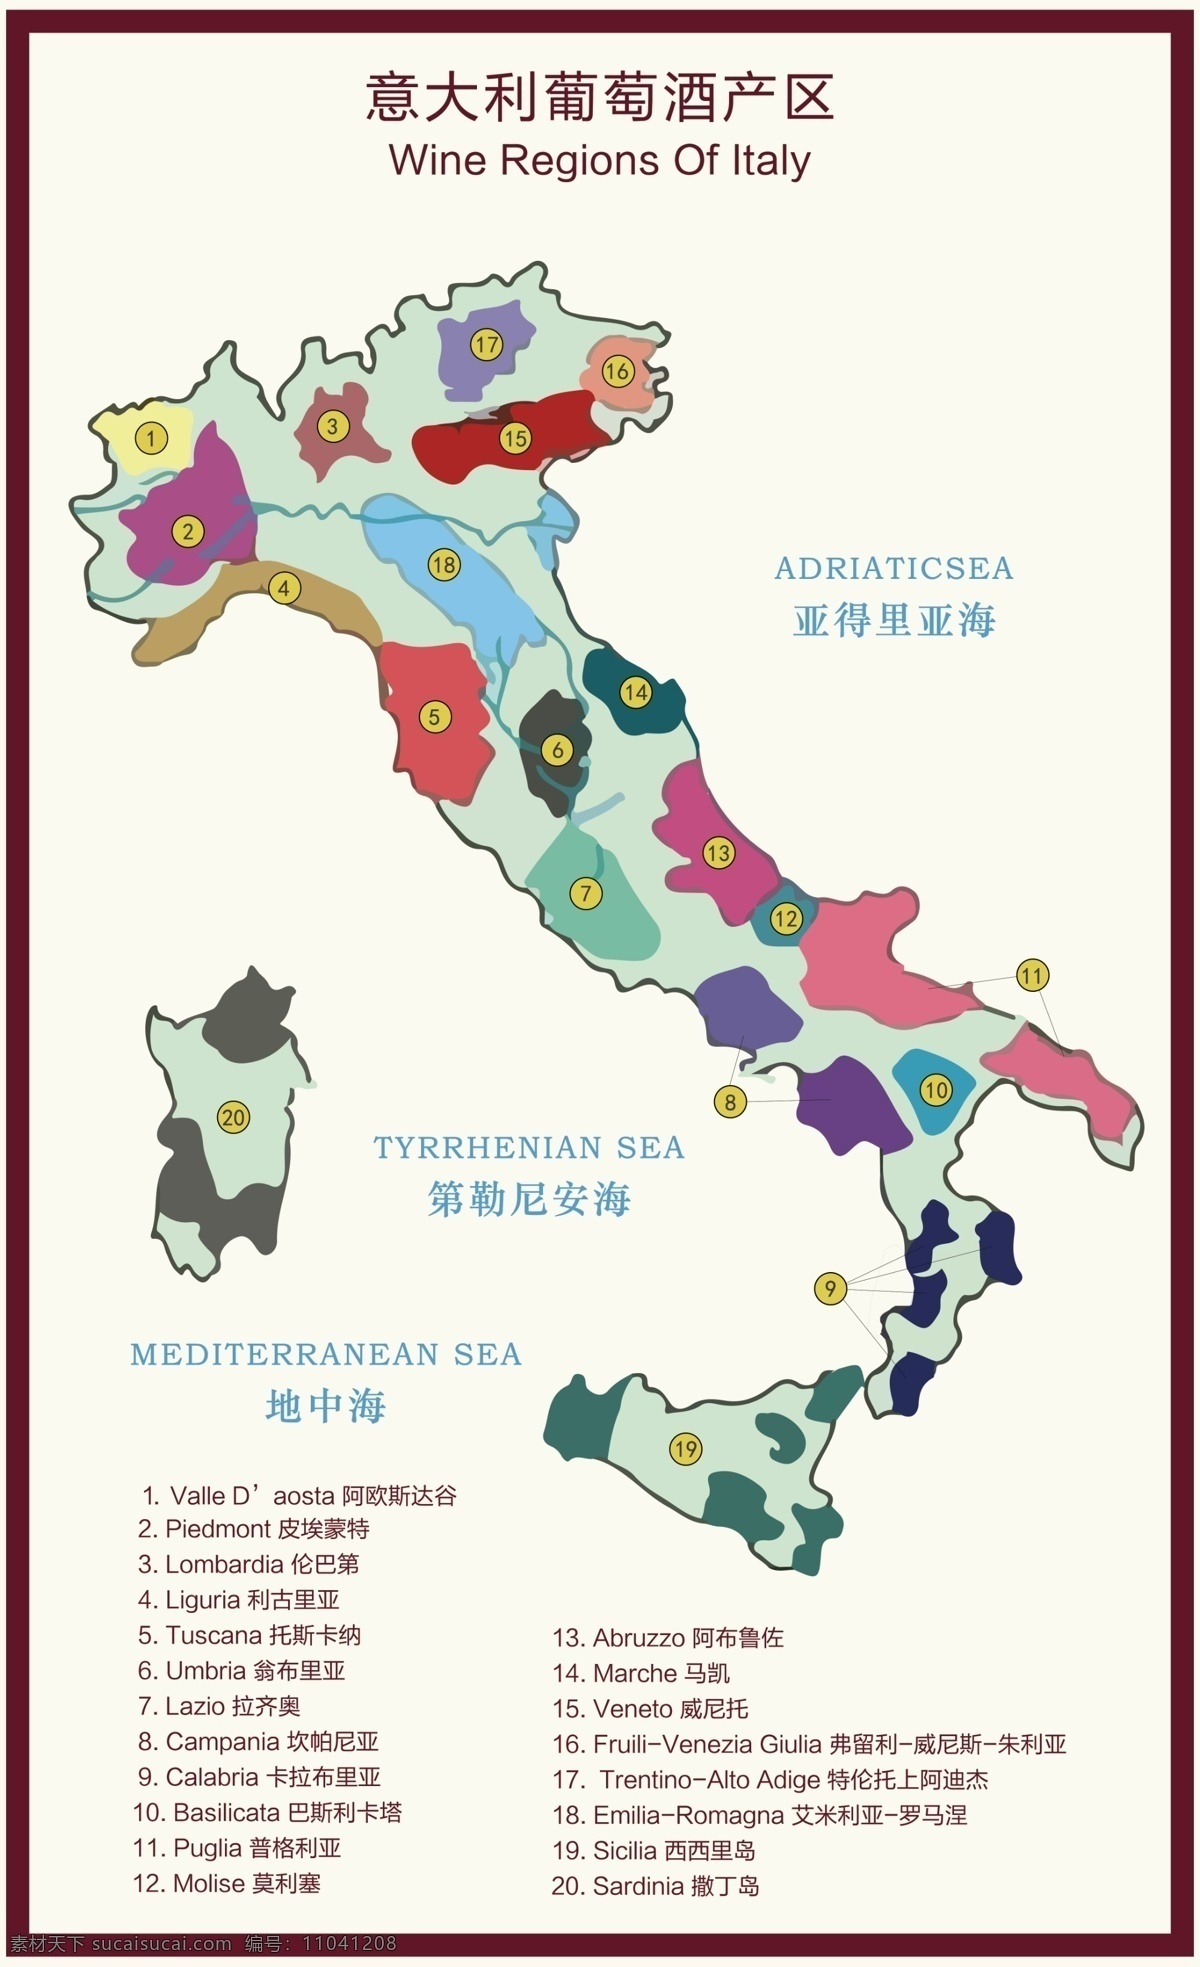 意大利 葡萄酒 产区 图 地图 葡萄酒产区 源文件 高清 可印刷 红酒